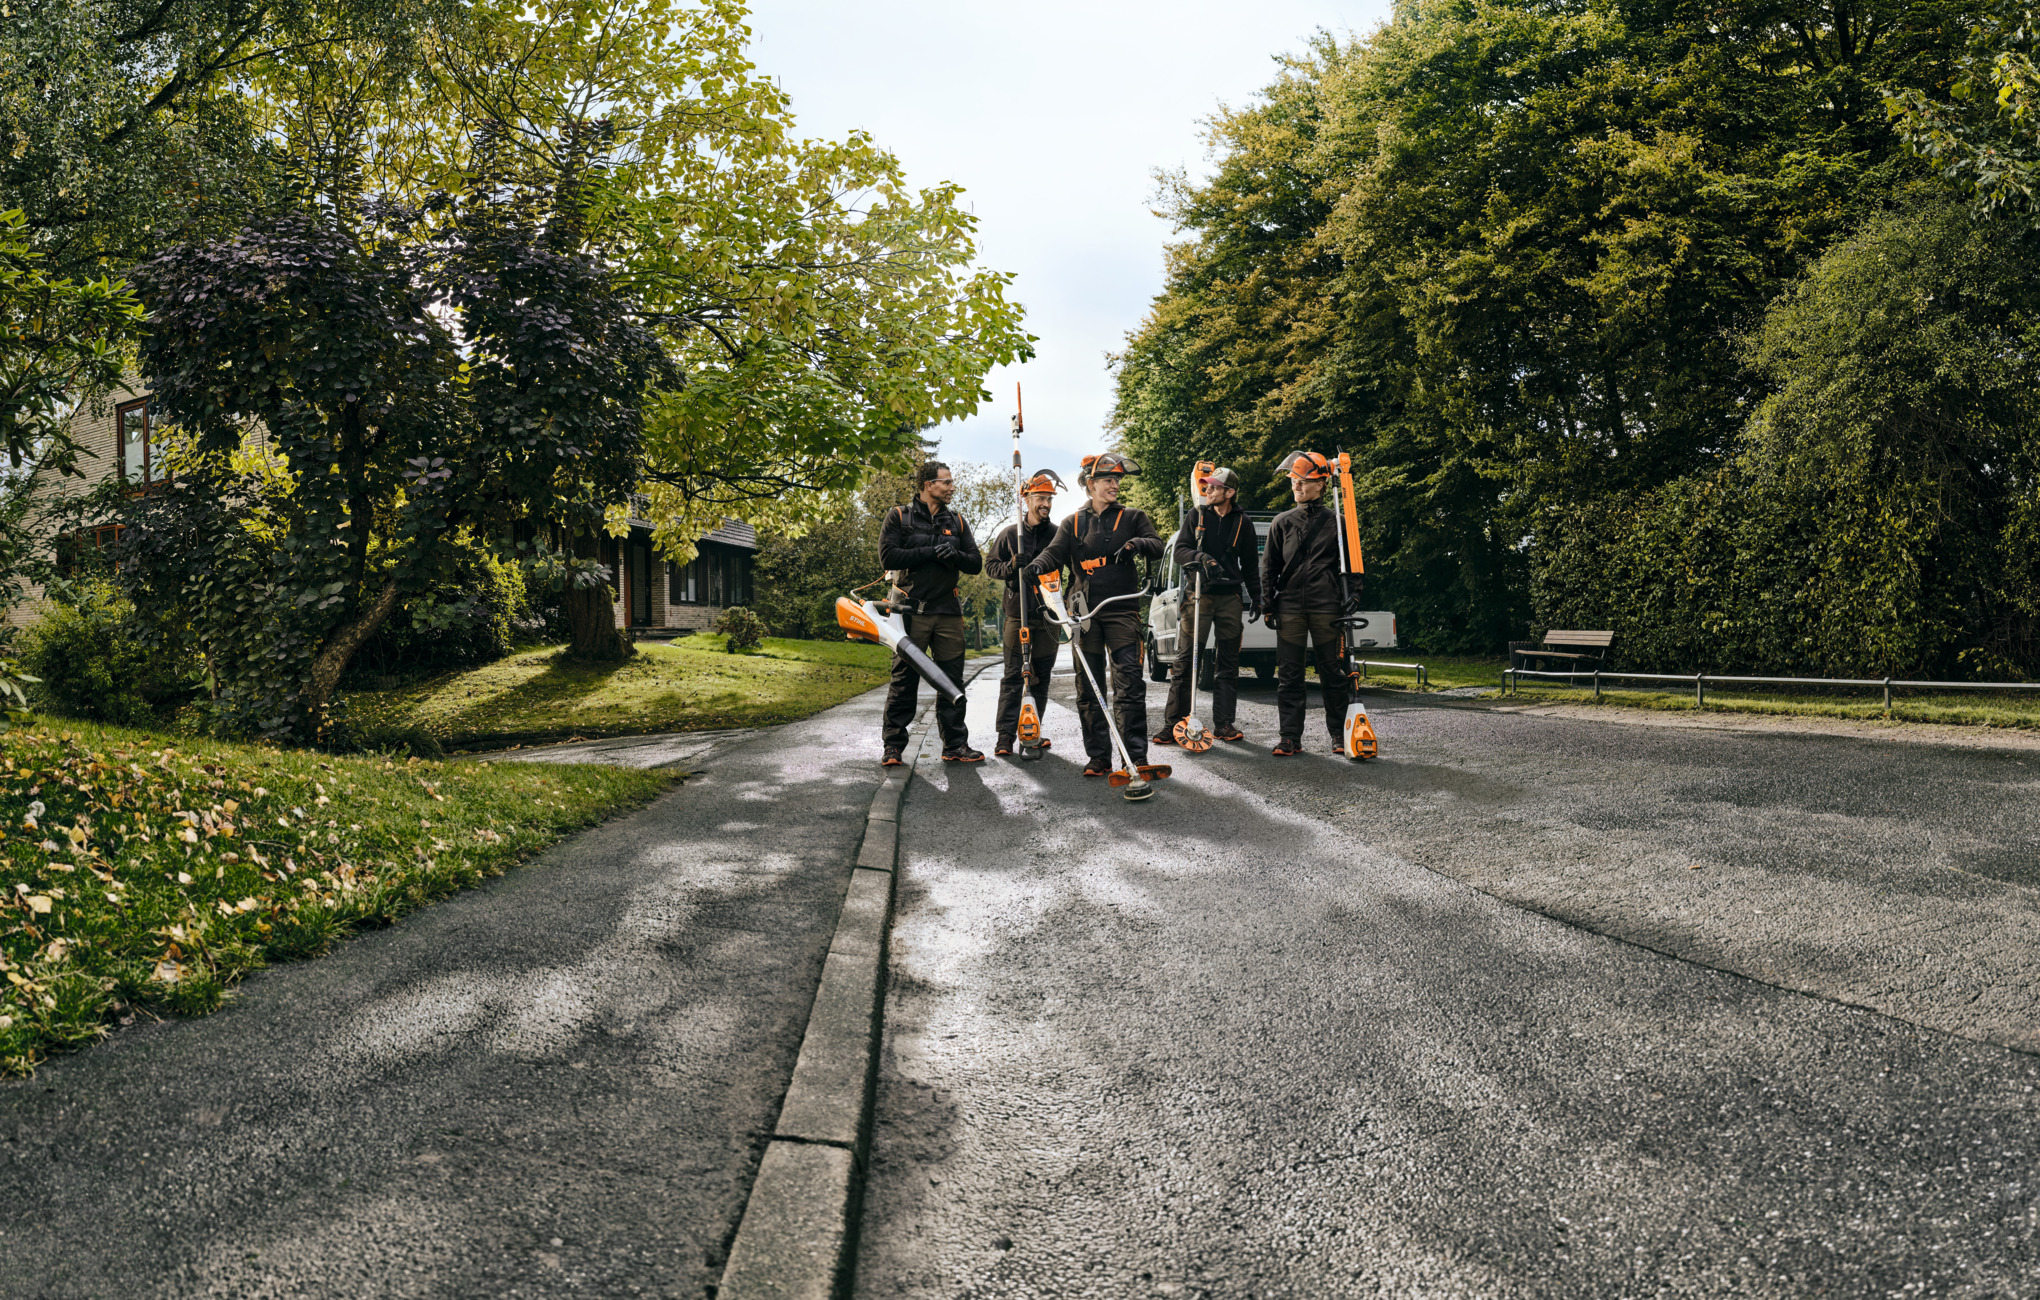 Pięciu profesjonalistów STIHL biegnie ulicą, trzymając urządzenia akumulatorowe